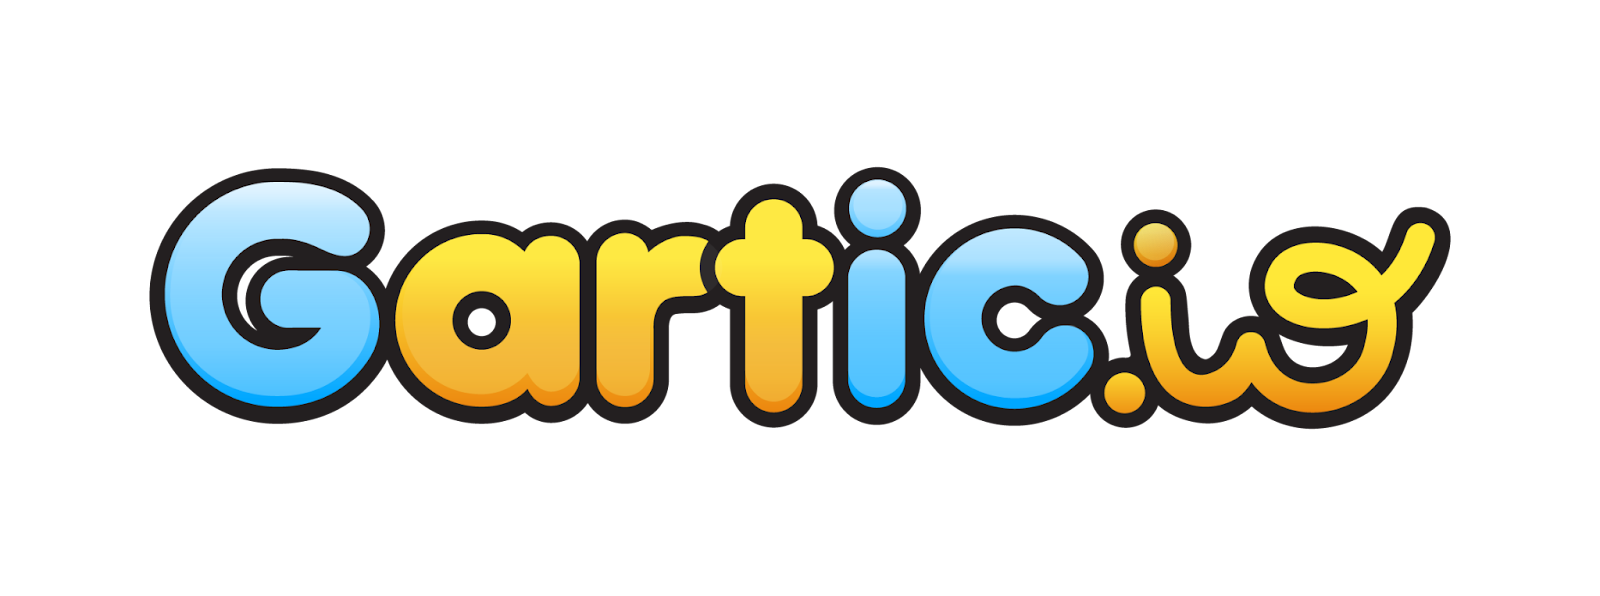 Mengenal Gartic.io,  Permainan Ice Breaking dalam Kelas yang Kreatif dan Inovatif